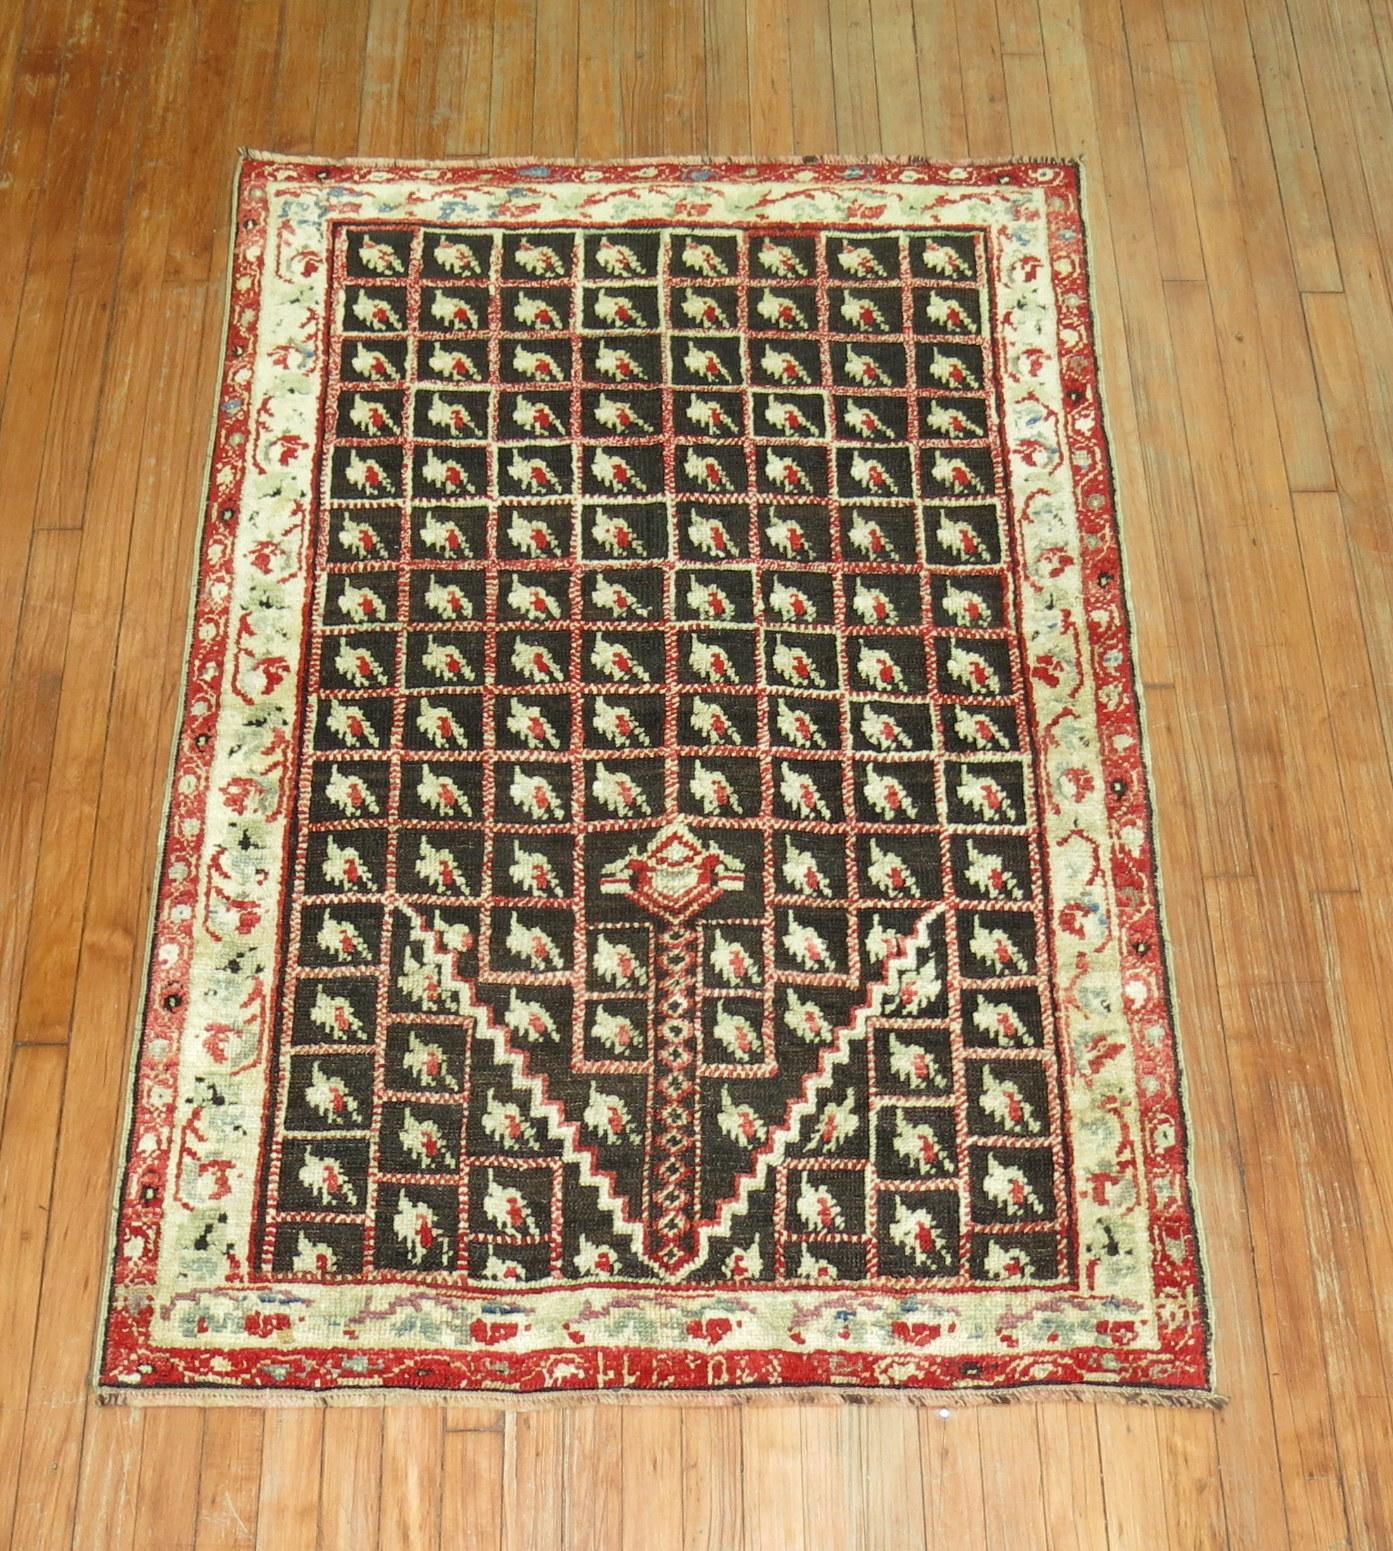 Ein einzigartiger antiker türkischer Ghiordes-Teppich aus dem frühen 20. Jahrhundert.

Maße: 3'7'' x 5'4''.